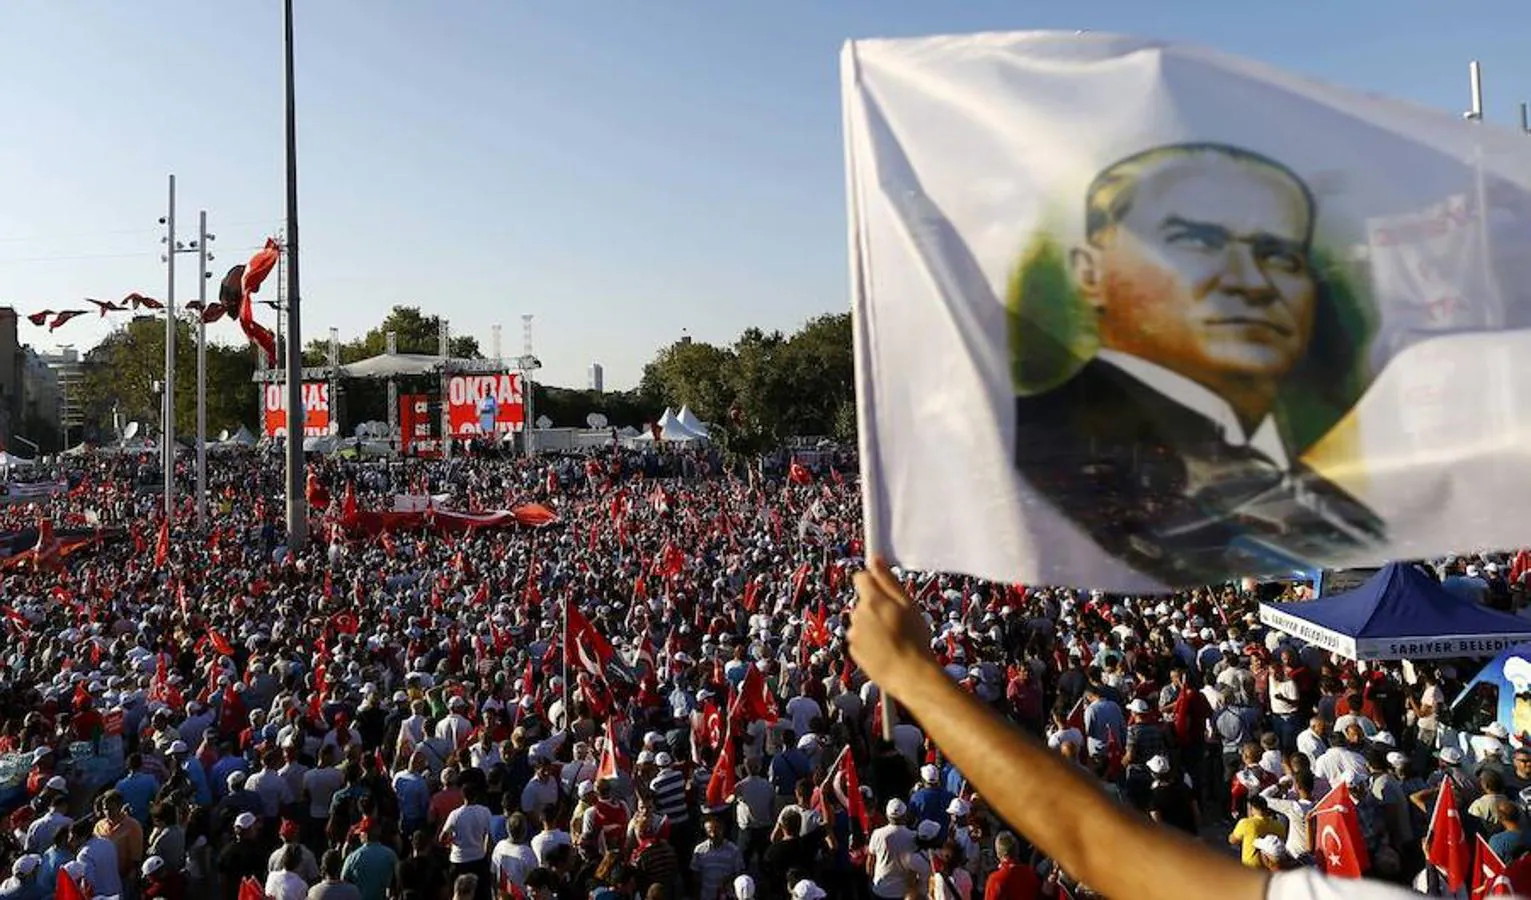 Masiva manifestación en Turquía en favor de los valores democráticos. Los turcos muestran su rechazo al golpe de Estado fallido